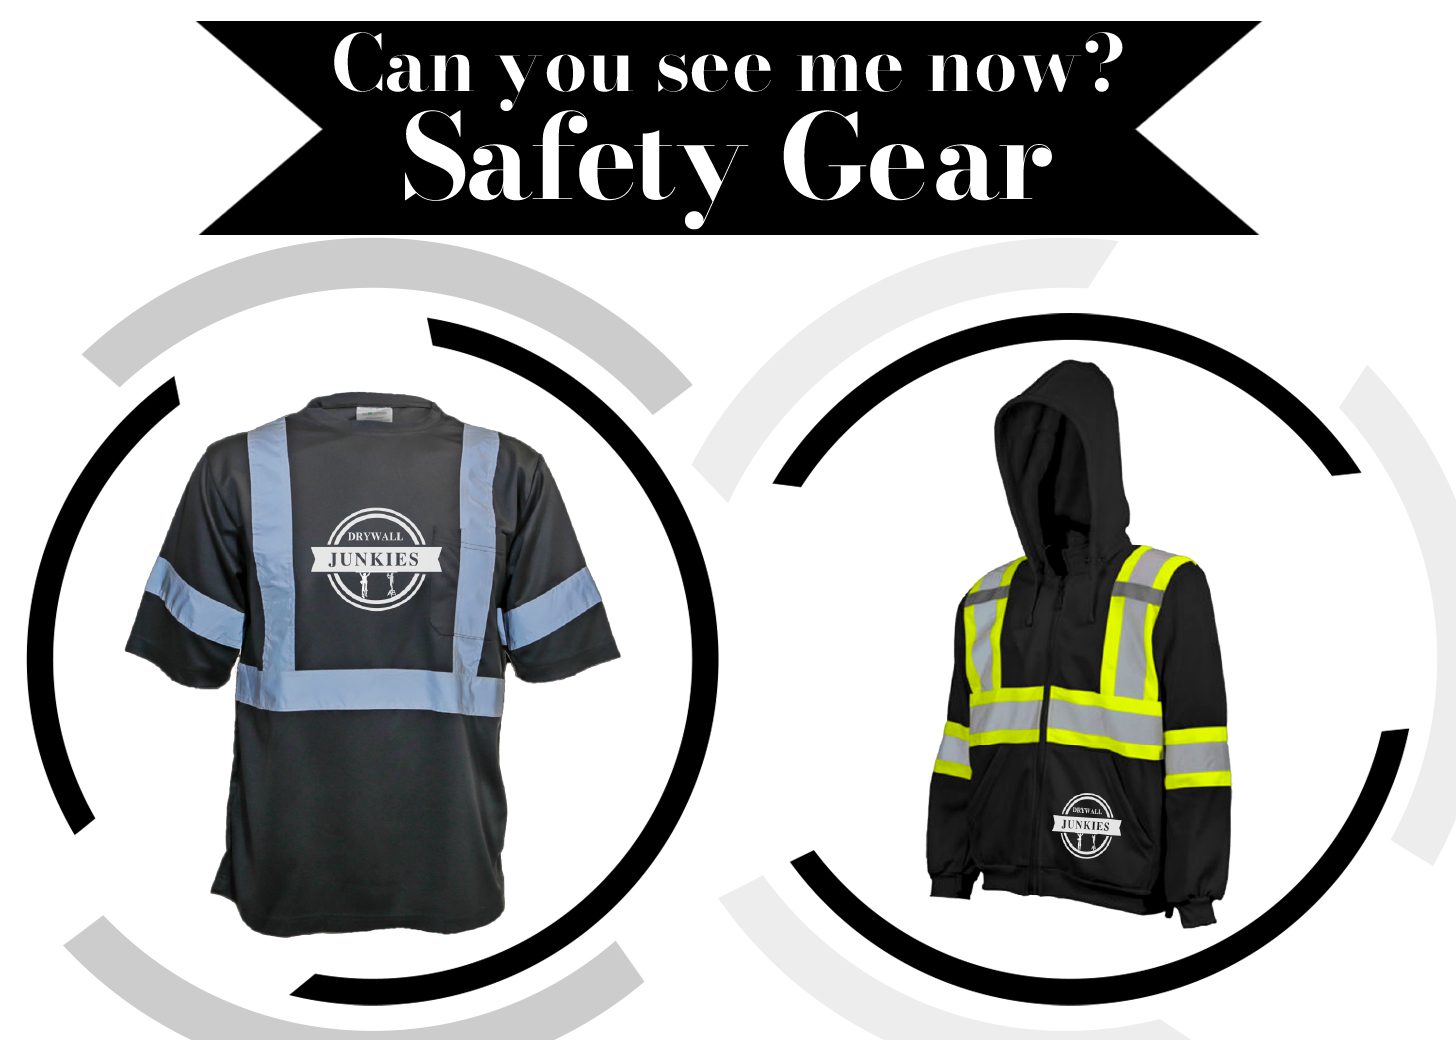 Safety Gear